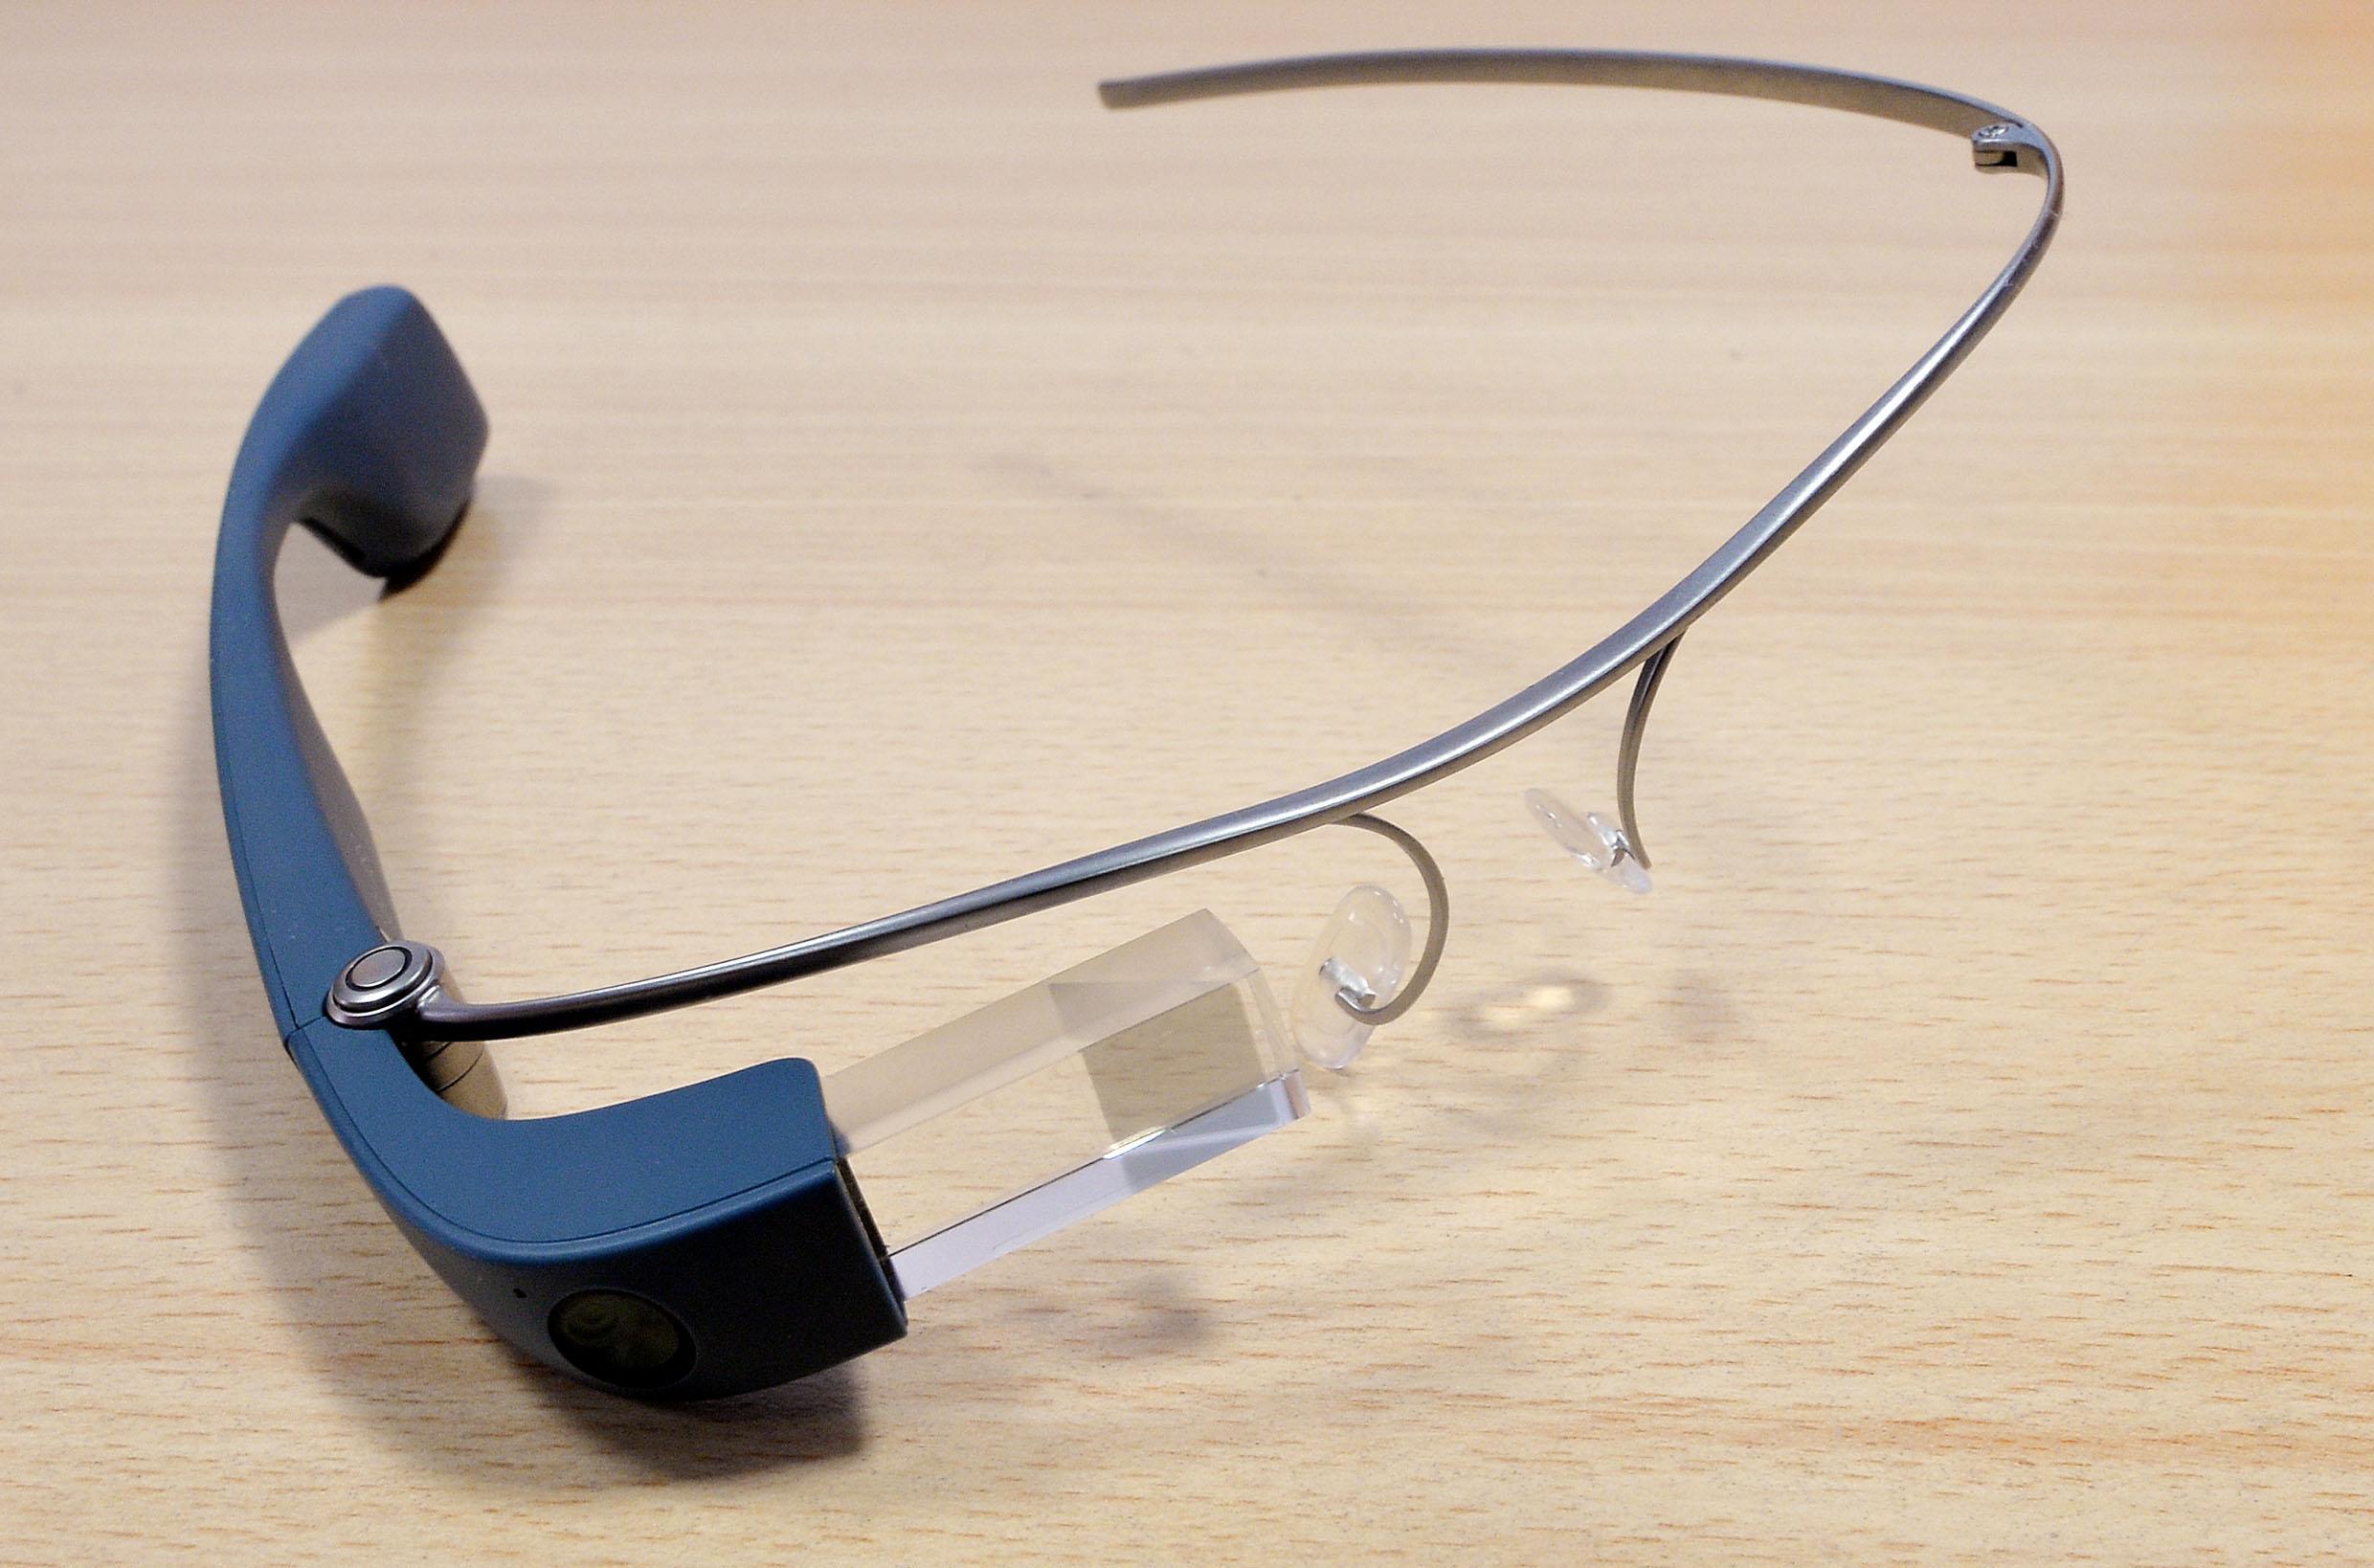 Un paio di Google Glass presso l'Ospedale Molinette, Torino, 20 ottobre 2015.  Per la prima volta in Italia, la tecnologia ha permesso a un gruppo di 25 medici specialisti di assistere alla visita di un paziente come se fossero fisicamente presenti. ANSA/ ALESSANDRO DI MARCO